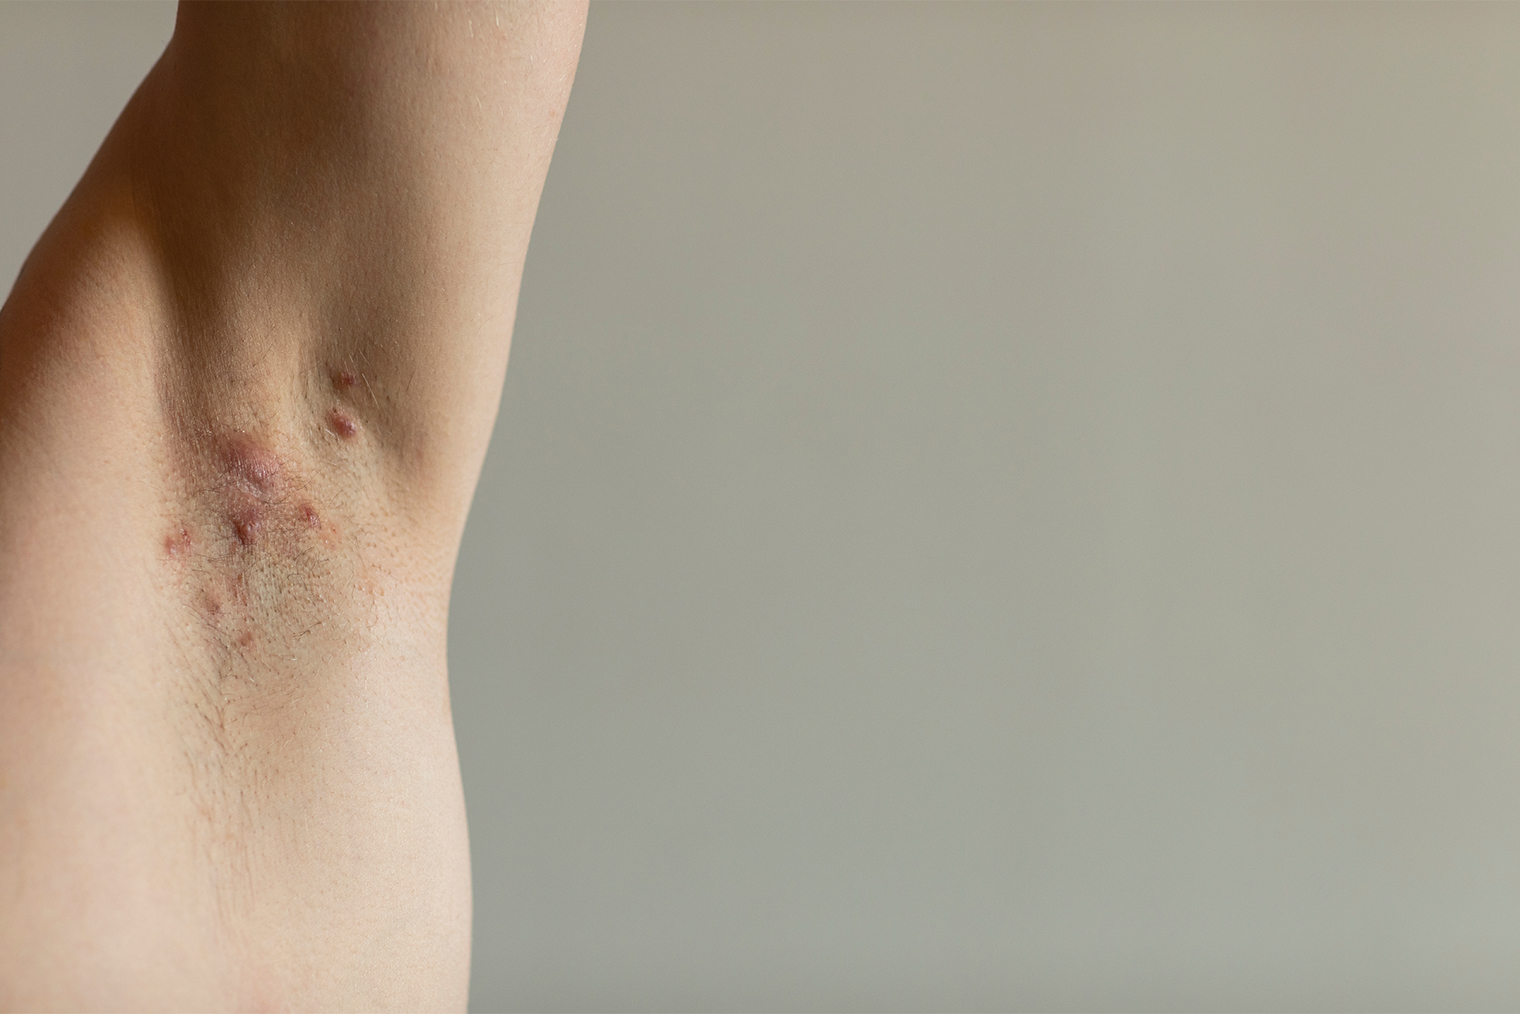 А так выглядят воспаленные участки при гидрадените. Обычно шишки не очень большие, но в то же время болезненные. Фотография: Lea Rae / Shutterstock / FOTODOM